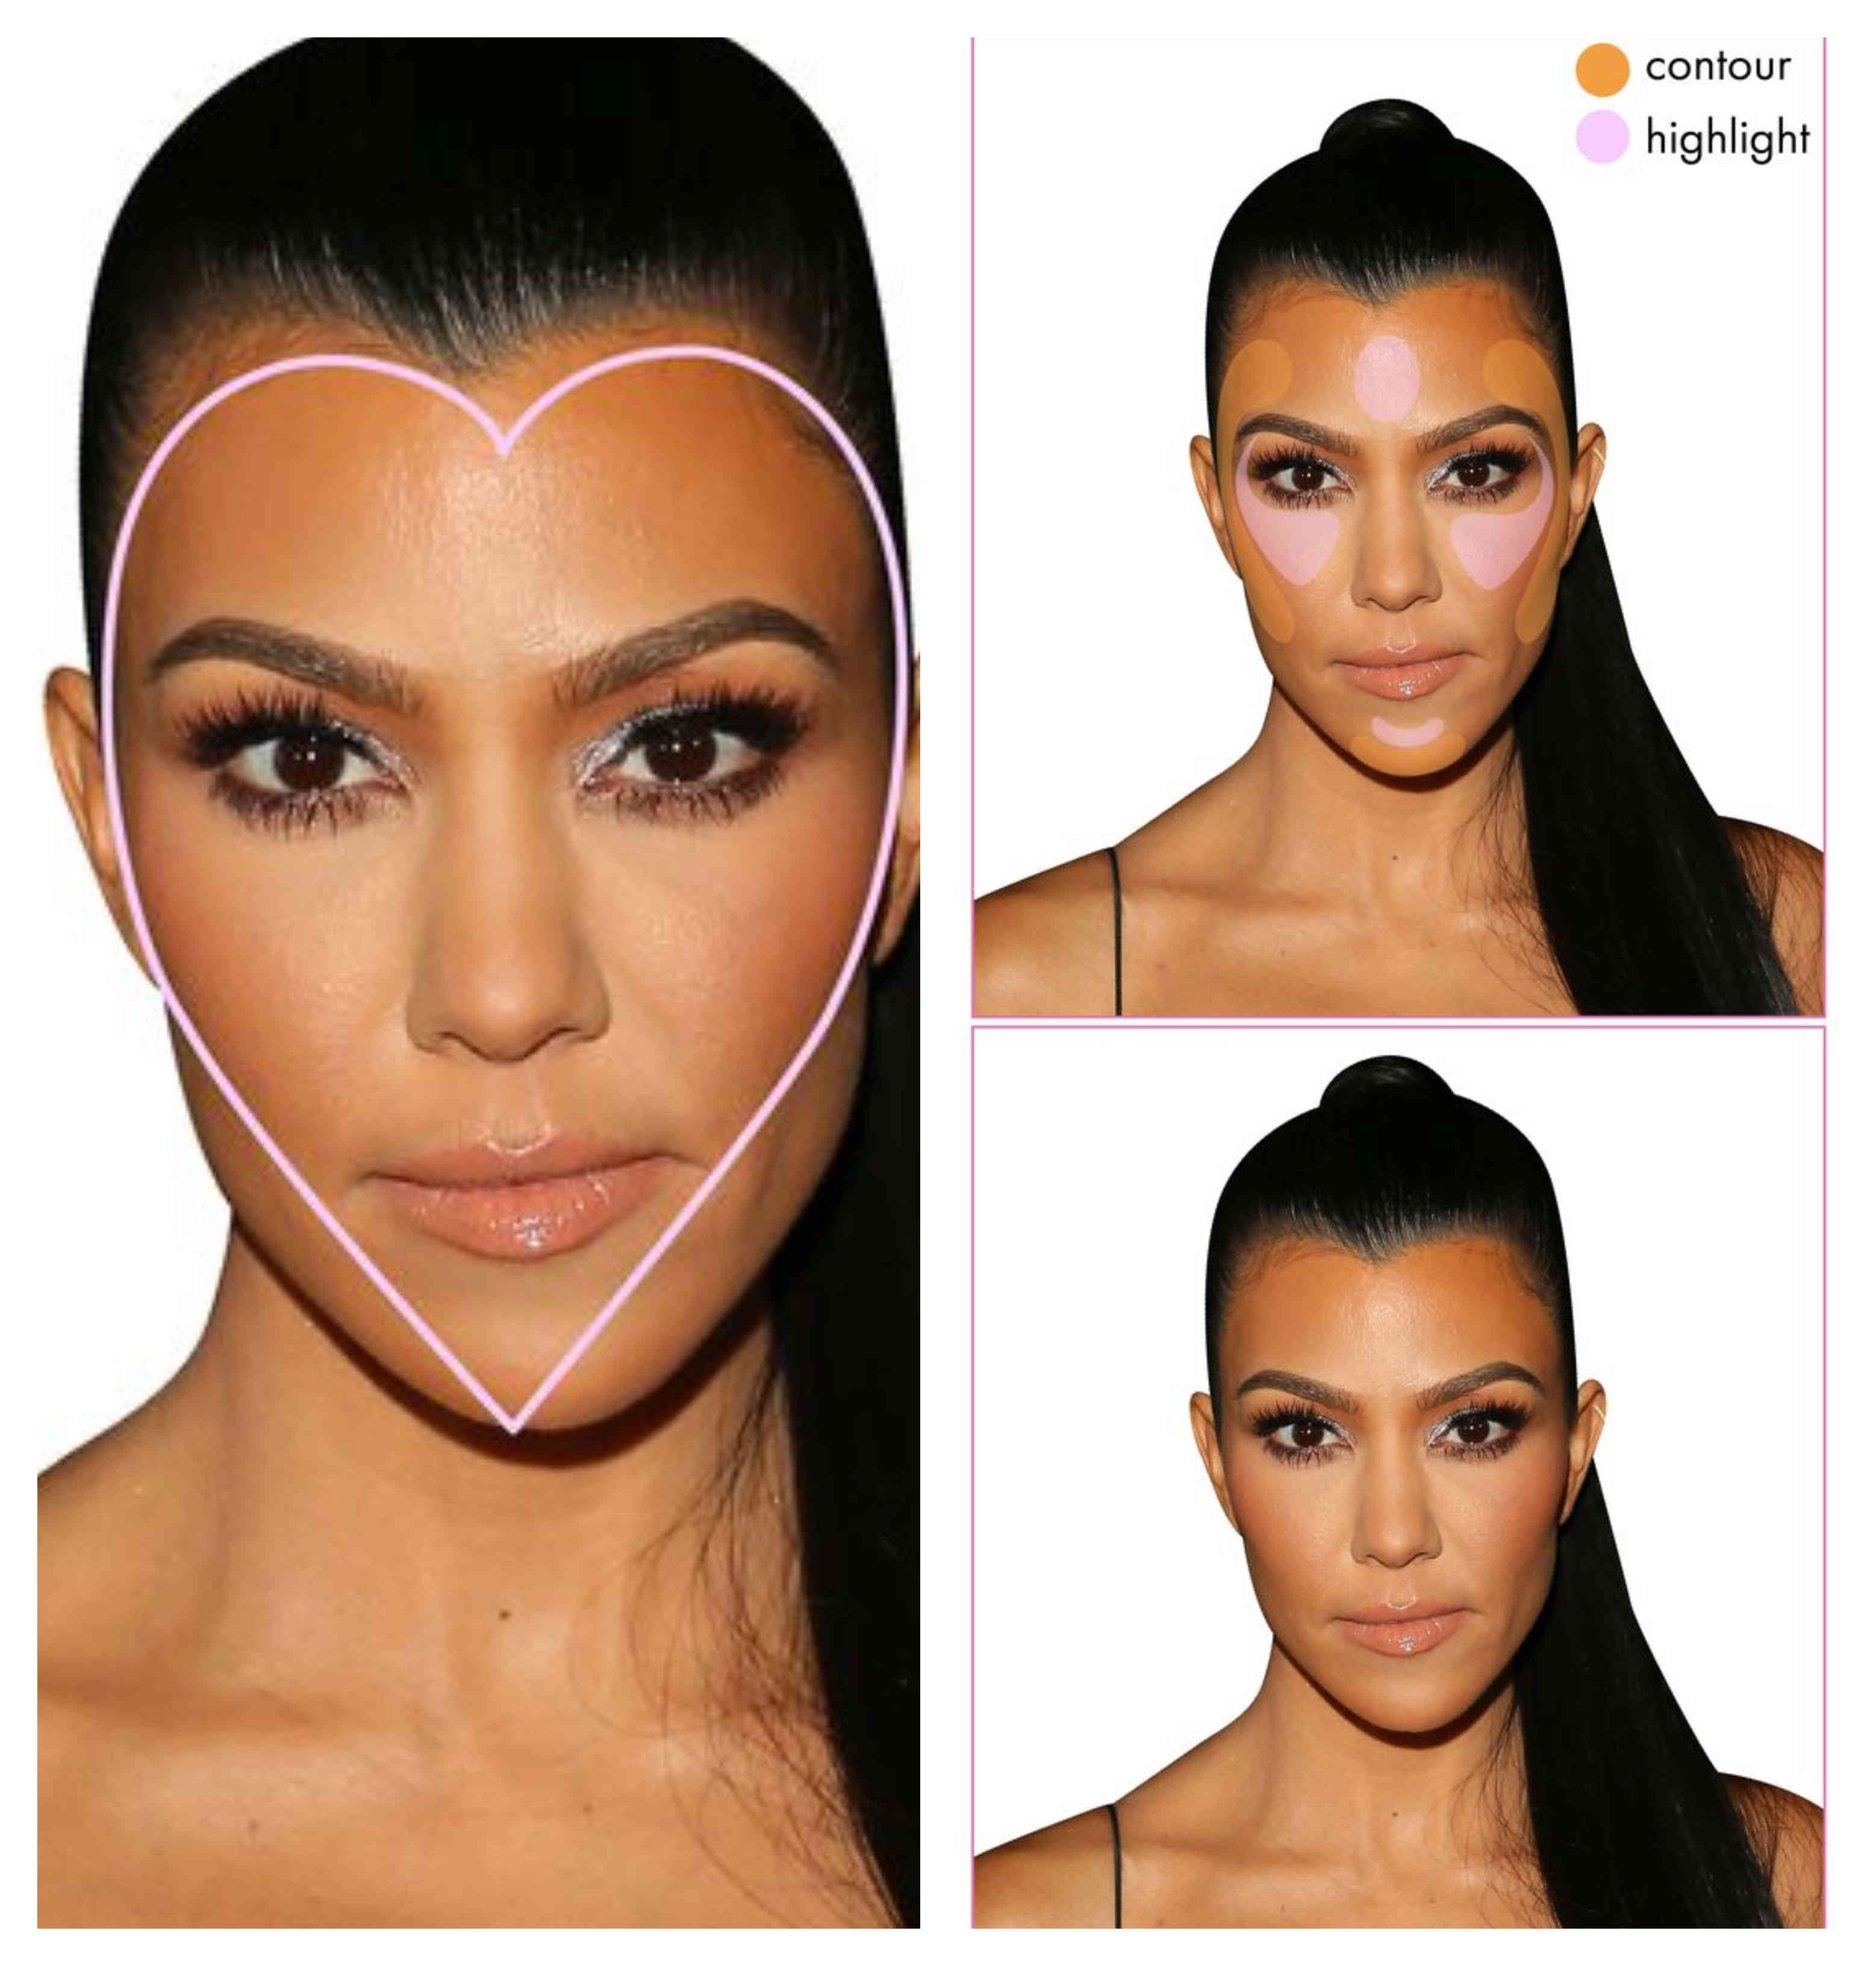 El contour y highlight ideal según la forma de tu cara